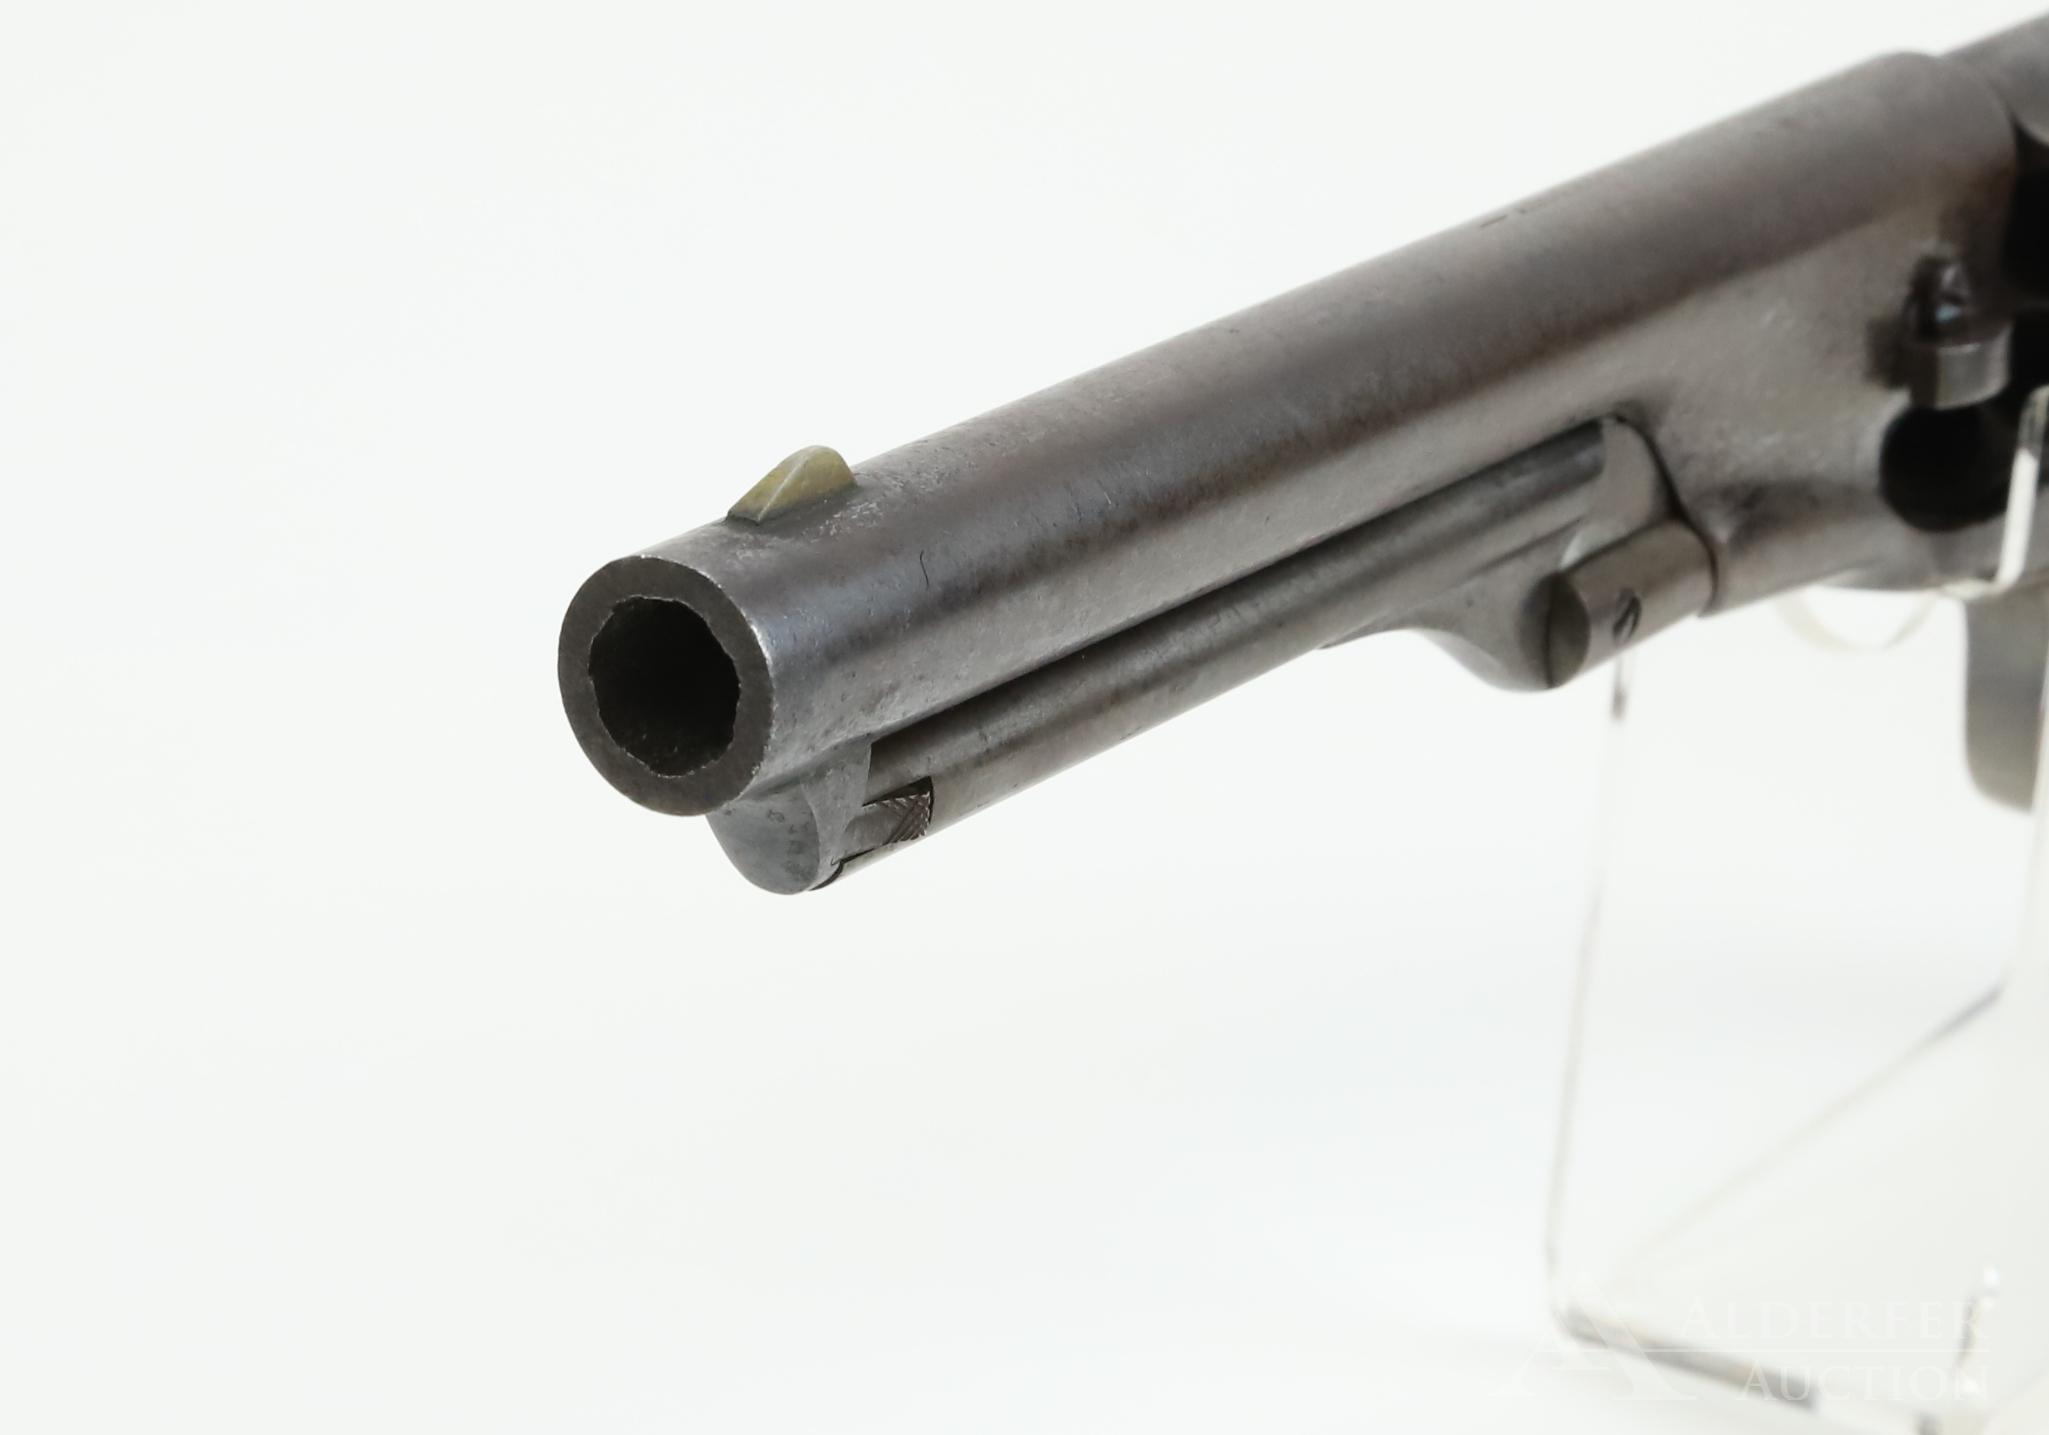 Colt Model 1860 Army Revolver-Fluted Cylinder